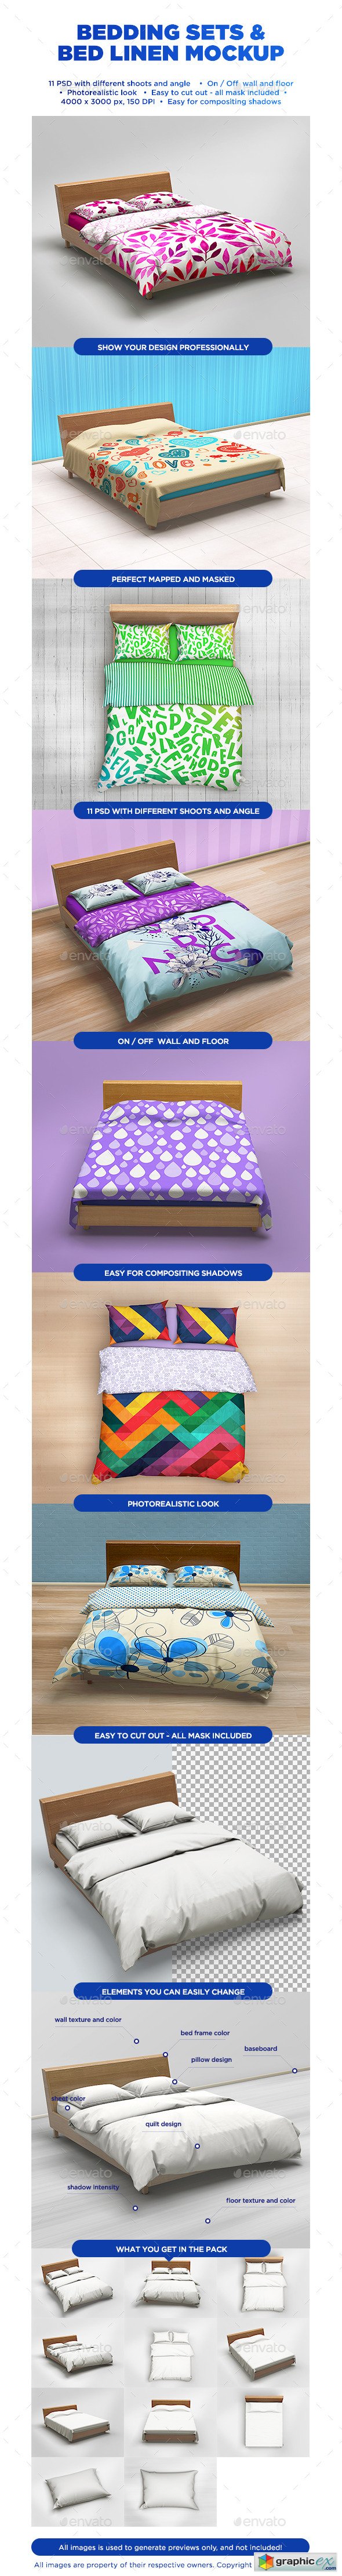 Bedding Sets & Bed Linen Mockup